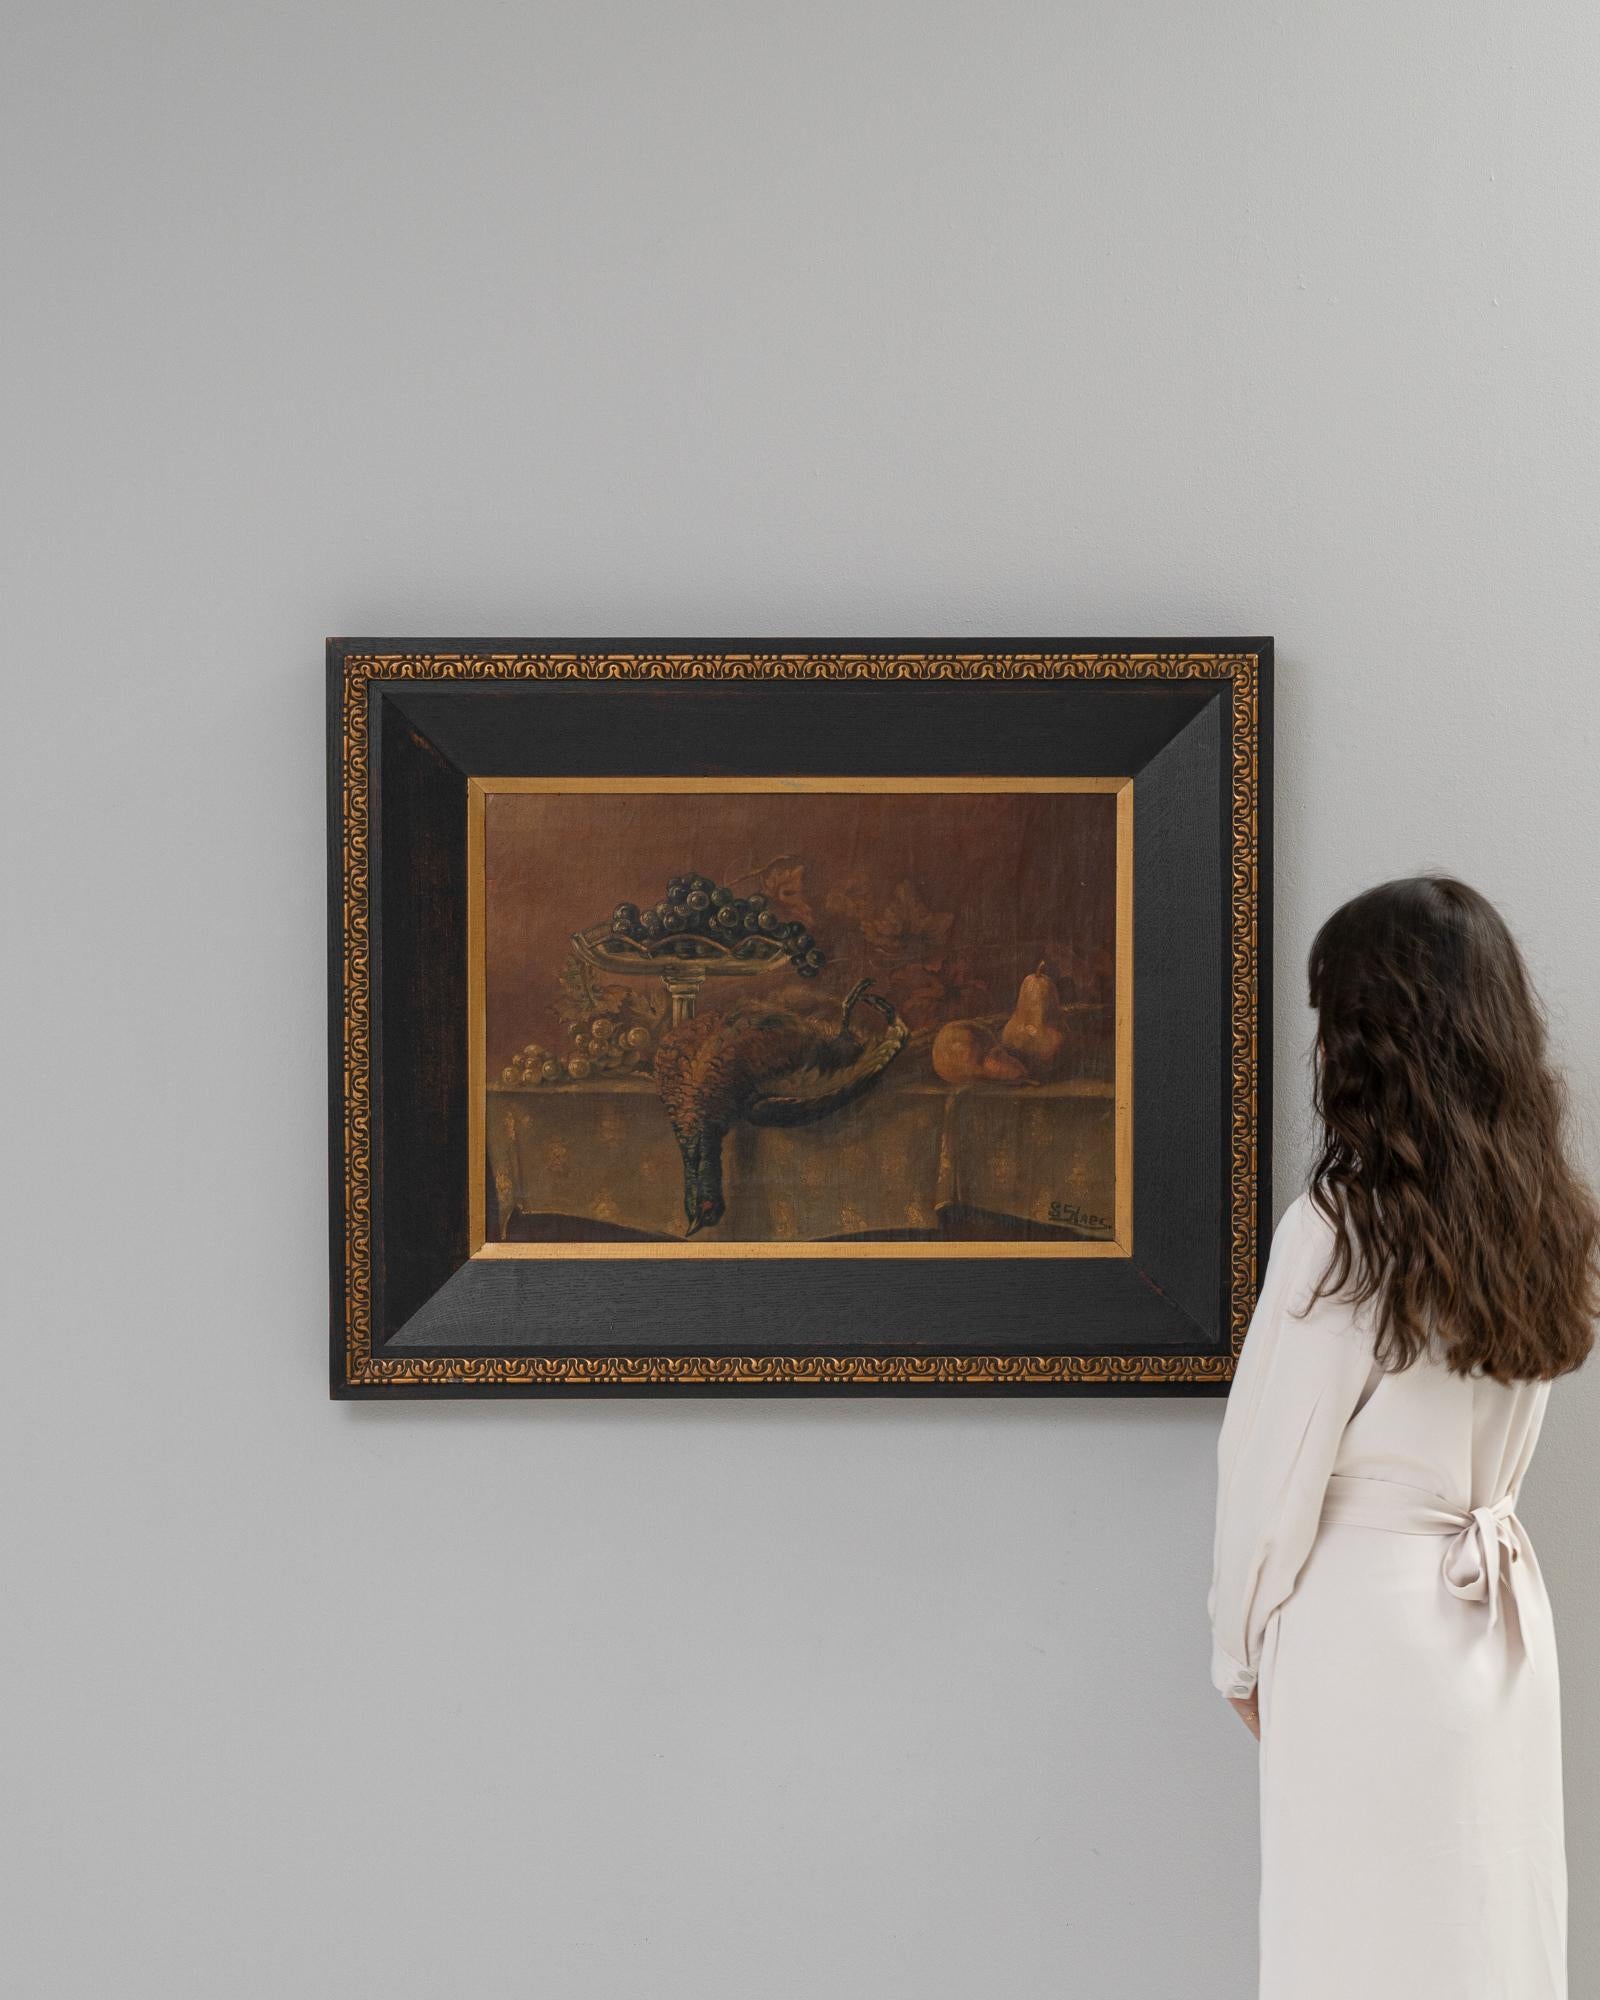 Cette peinture française évocatrice du XXe siècle capture l'essence riche et texturée d'une nature morte. Nichée dans un cadre doré et orné, l'œuvre d'art présente un tableau d'opulence et d'abondance avec une coupe de fruits et un faisan prêt pour